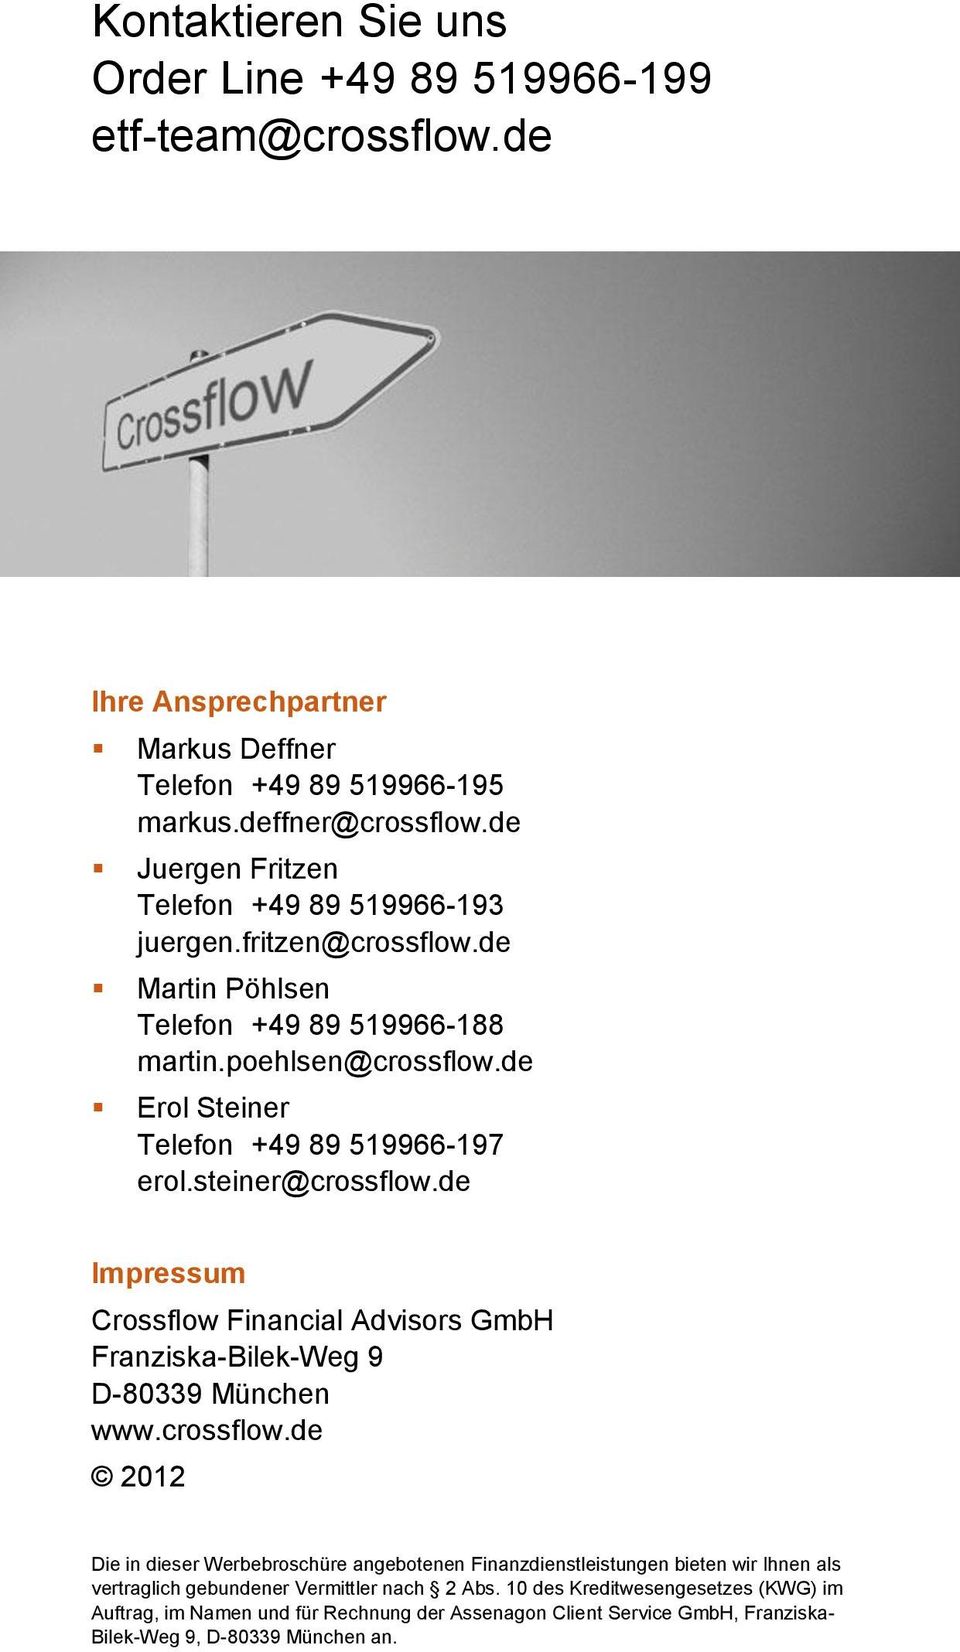 steiner@crossflow.de Impressum Crossflow Financial Advisors GmbH Franziska-Bilek-Weg 9 D-80339 München www.crossflow.de 2012 Die in dieser Werbebroschüre angebotenen Finanzdienstleistungen bieten wir Ihnen als vertraglich gebundener Vermittler nach 2 Abs.